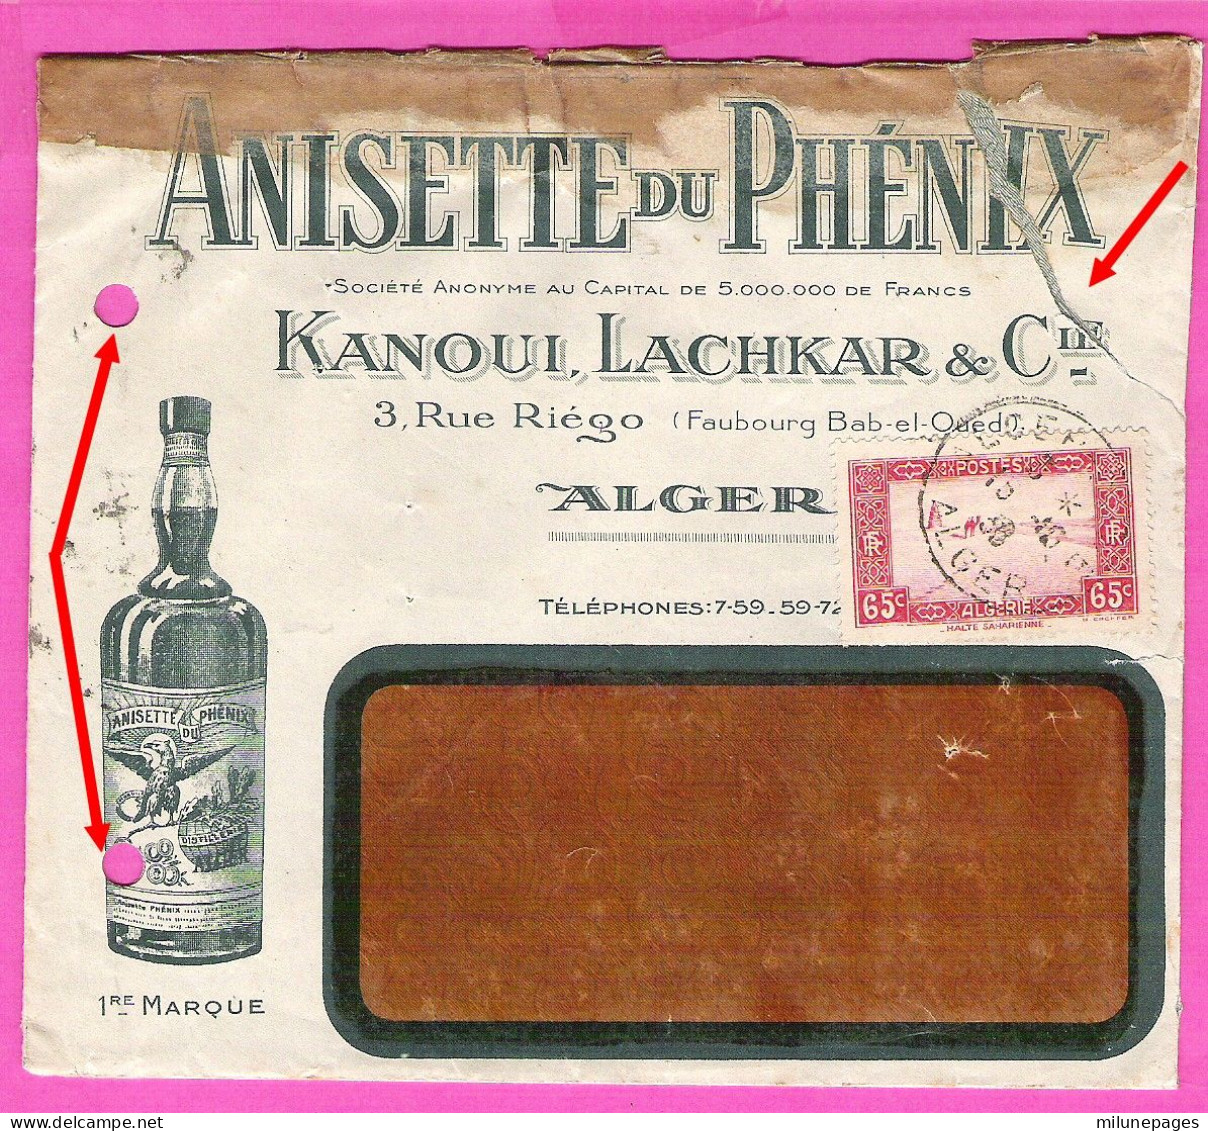 Enveloppe Illustrée Pour L'Anisette Du Phénix Kanoui, Lachkar & Cie à Alger En 1936 - Food